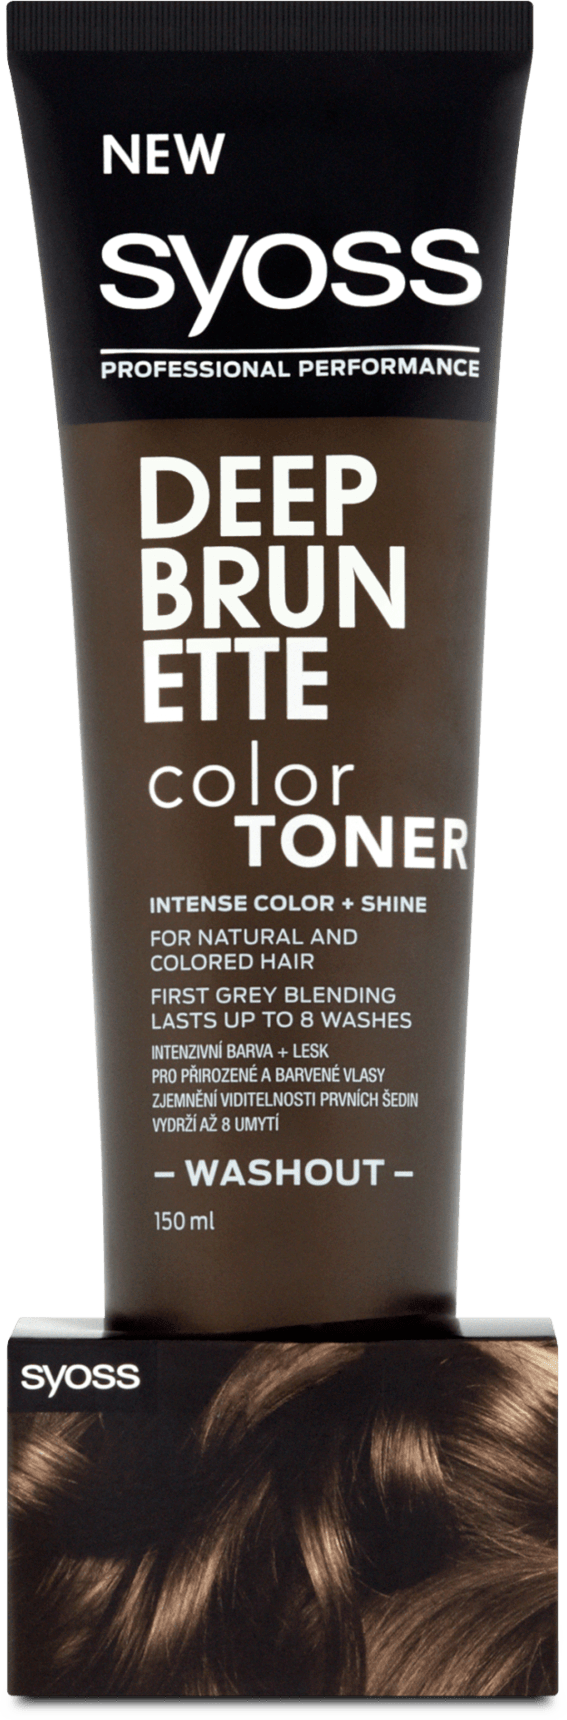 syoss Hair Color Toner dark brown, 150 ml